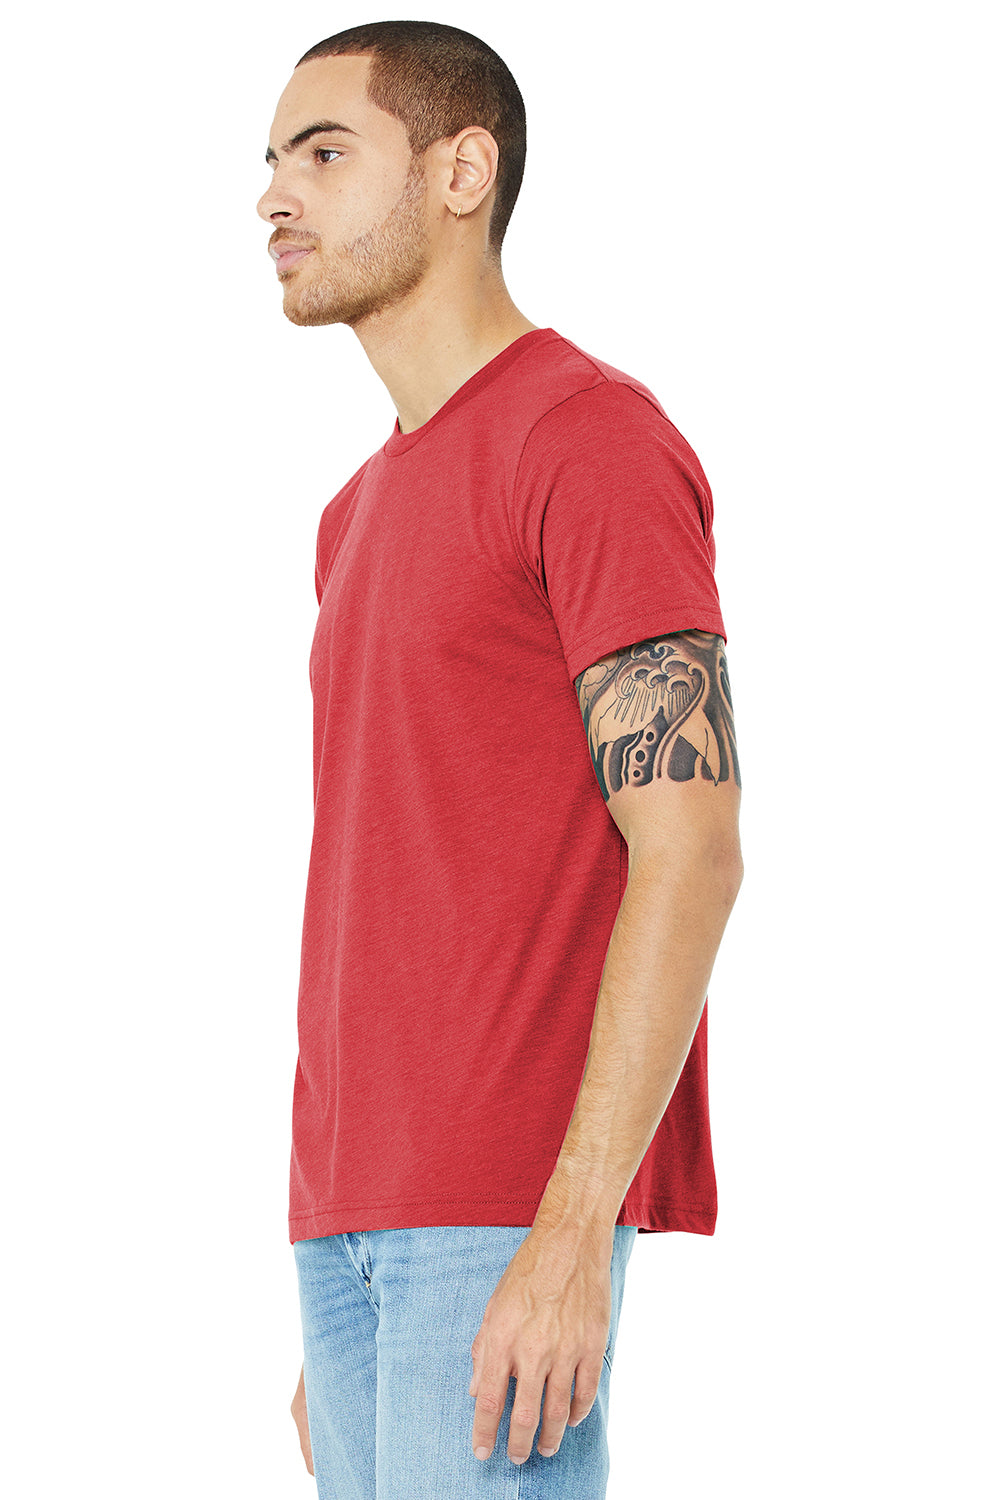 Bella + Canvas BC3413/3413C/3413 Mens Short Sleeve Crewneck T-Shirt Red Model 3Q